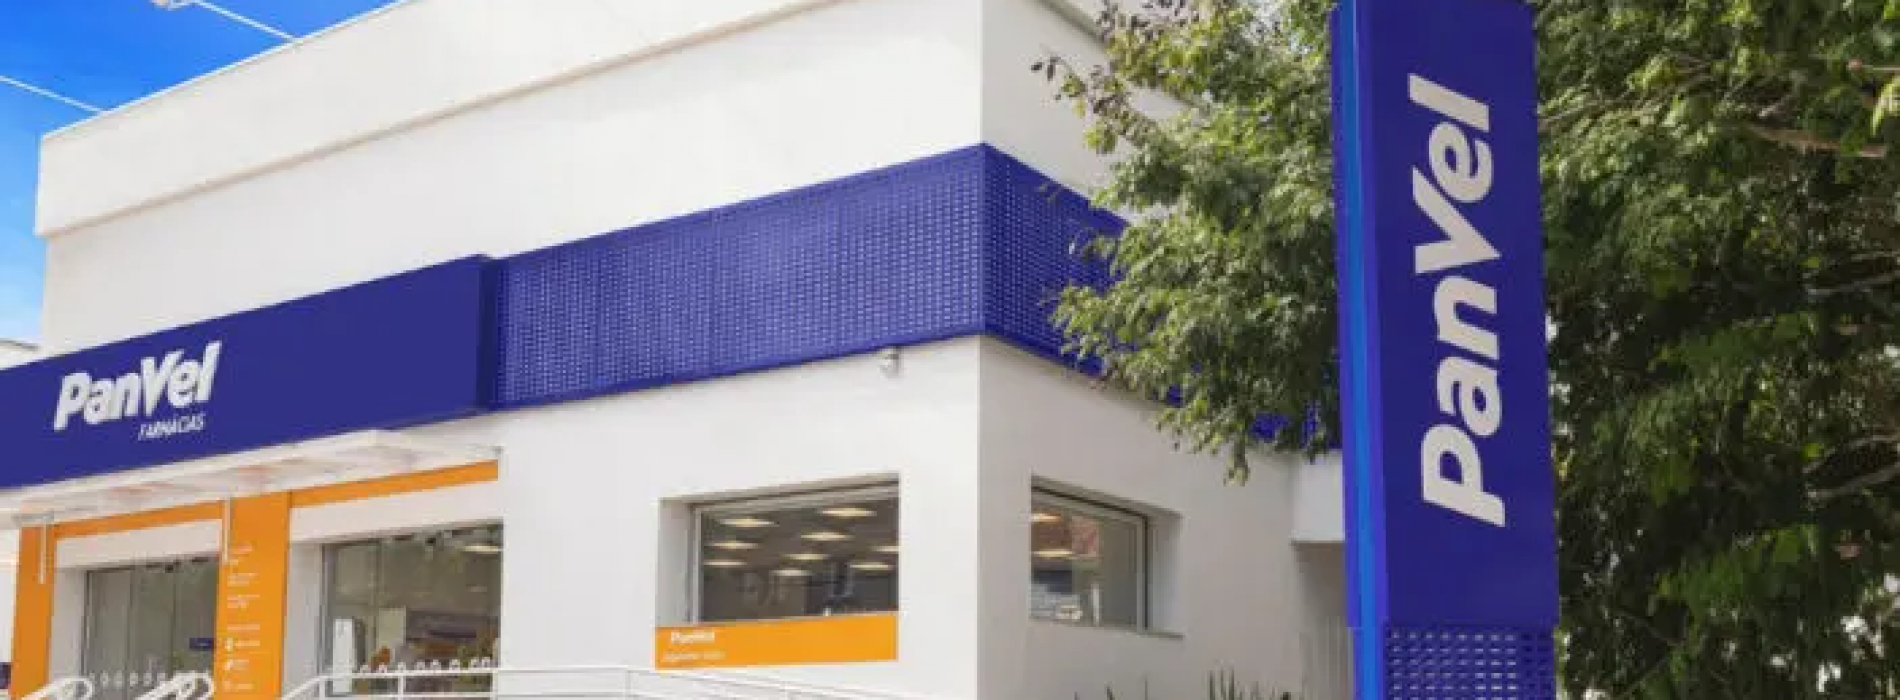 Panvel lança linha própria de papelaria, acessórios e produtos de conveniência